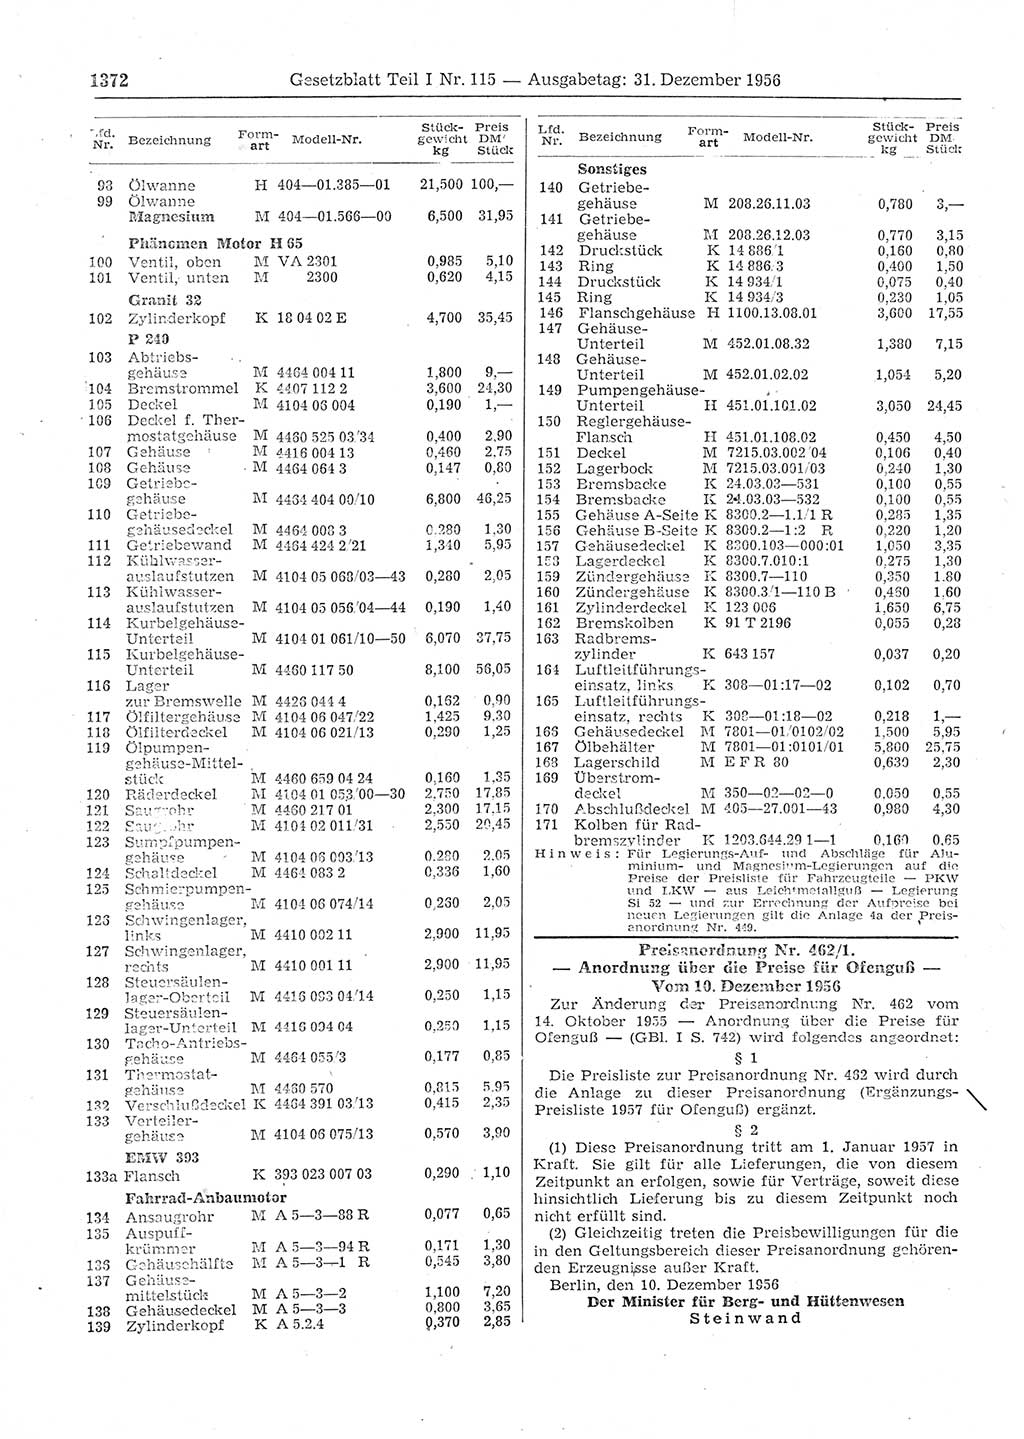 Gesetzblatt (GBl.) der Deutschen Demokratischen Republik (DDR) Teil Ⅰ 1956, Seite 1372 (GBl. DDR Ⅰ 1956, S. 1372)